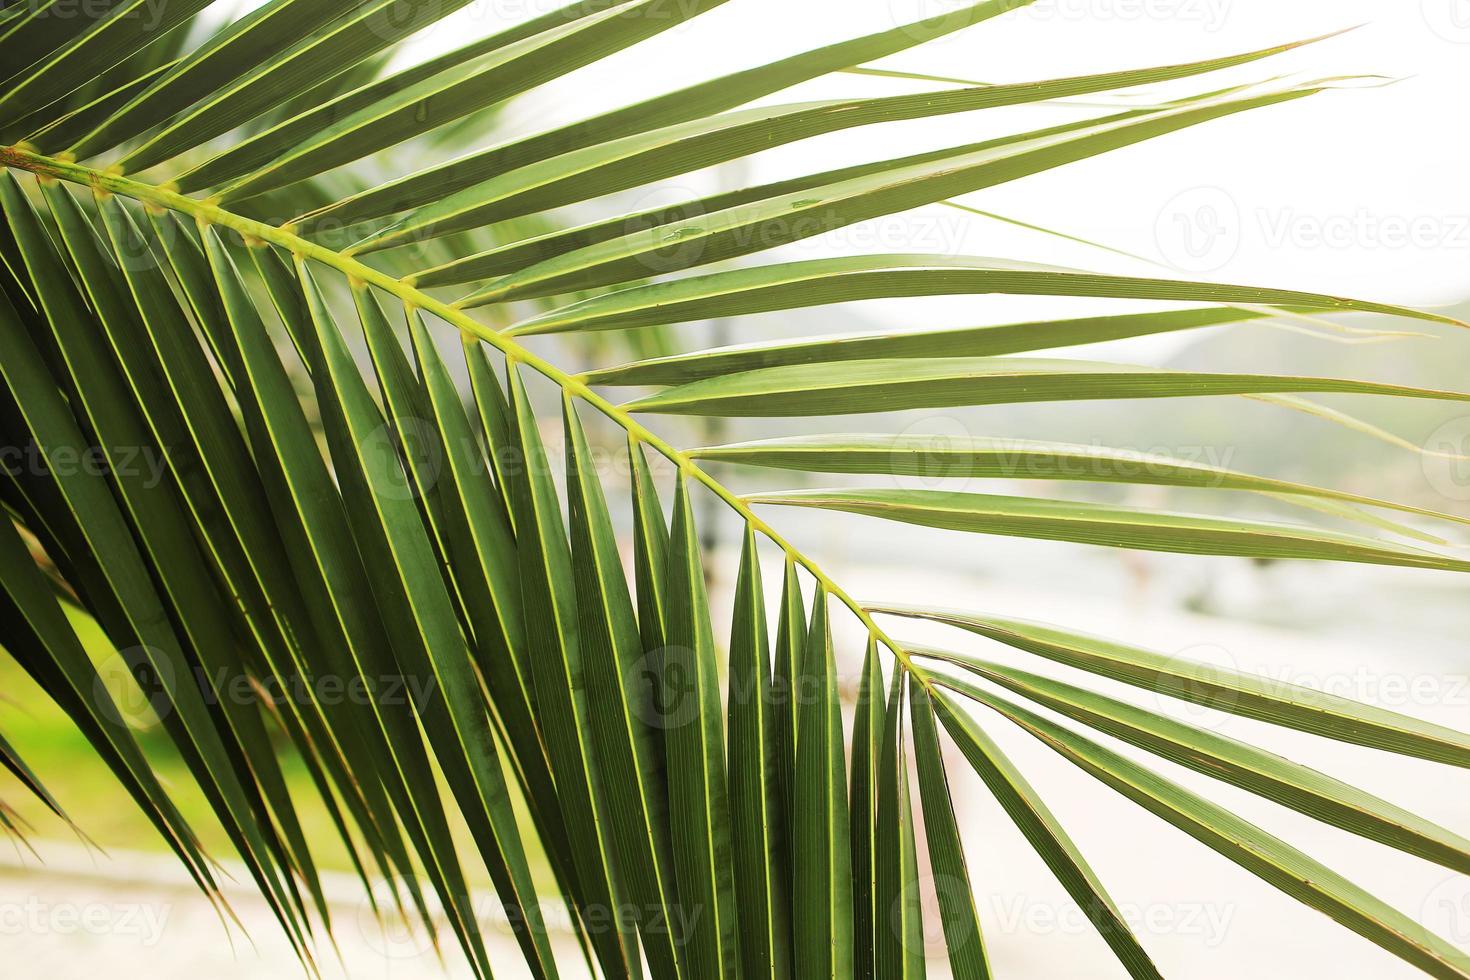 foglia di palma verde. foto astratta della giungla dell'isola tropicale. giornata di sole in luogo esotico. modello di banner di hotel turistico o resort. soffice foglia di palma da cocco. Paradiso tropicale